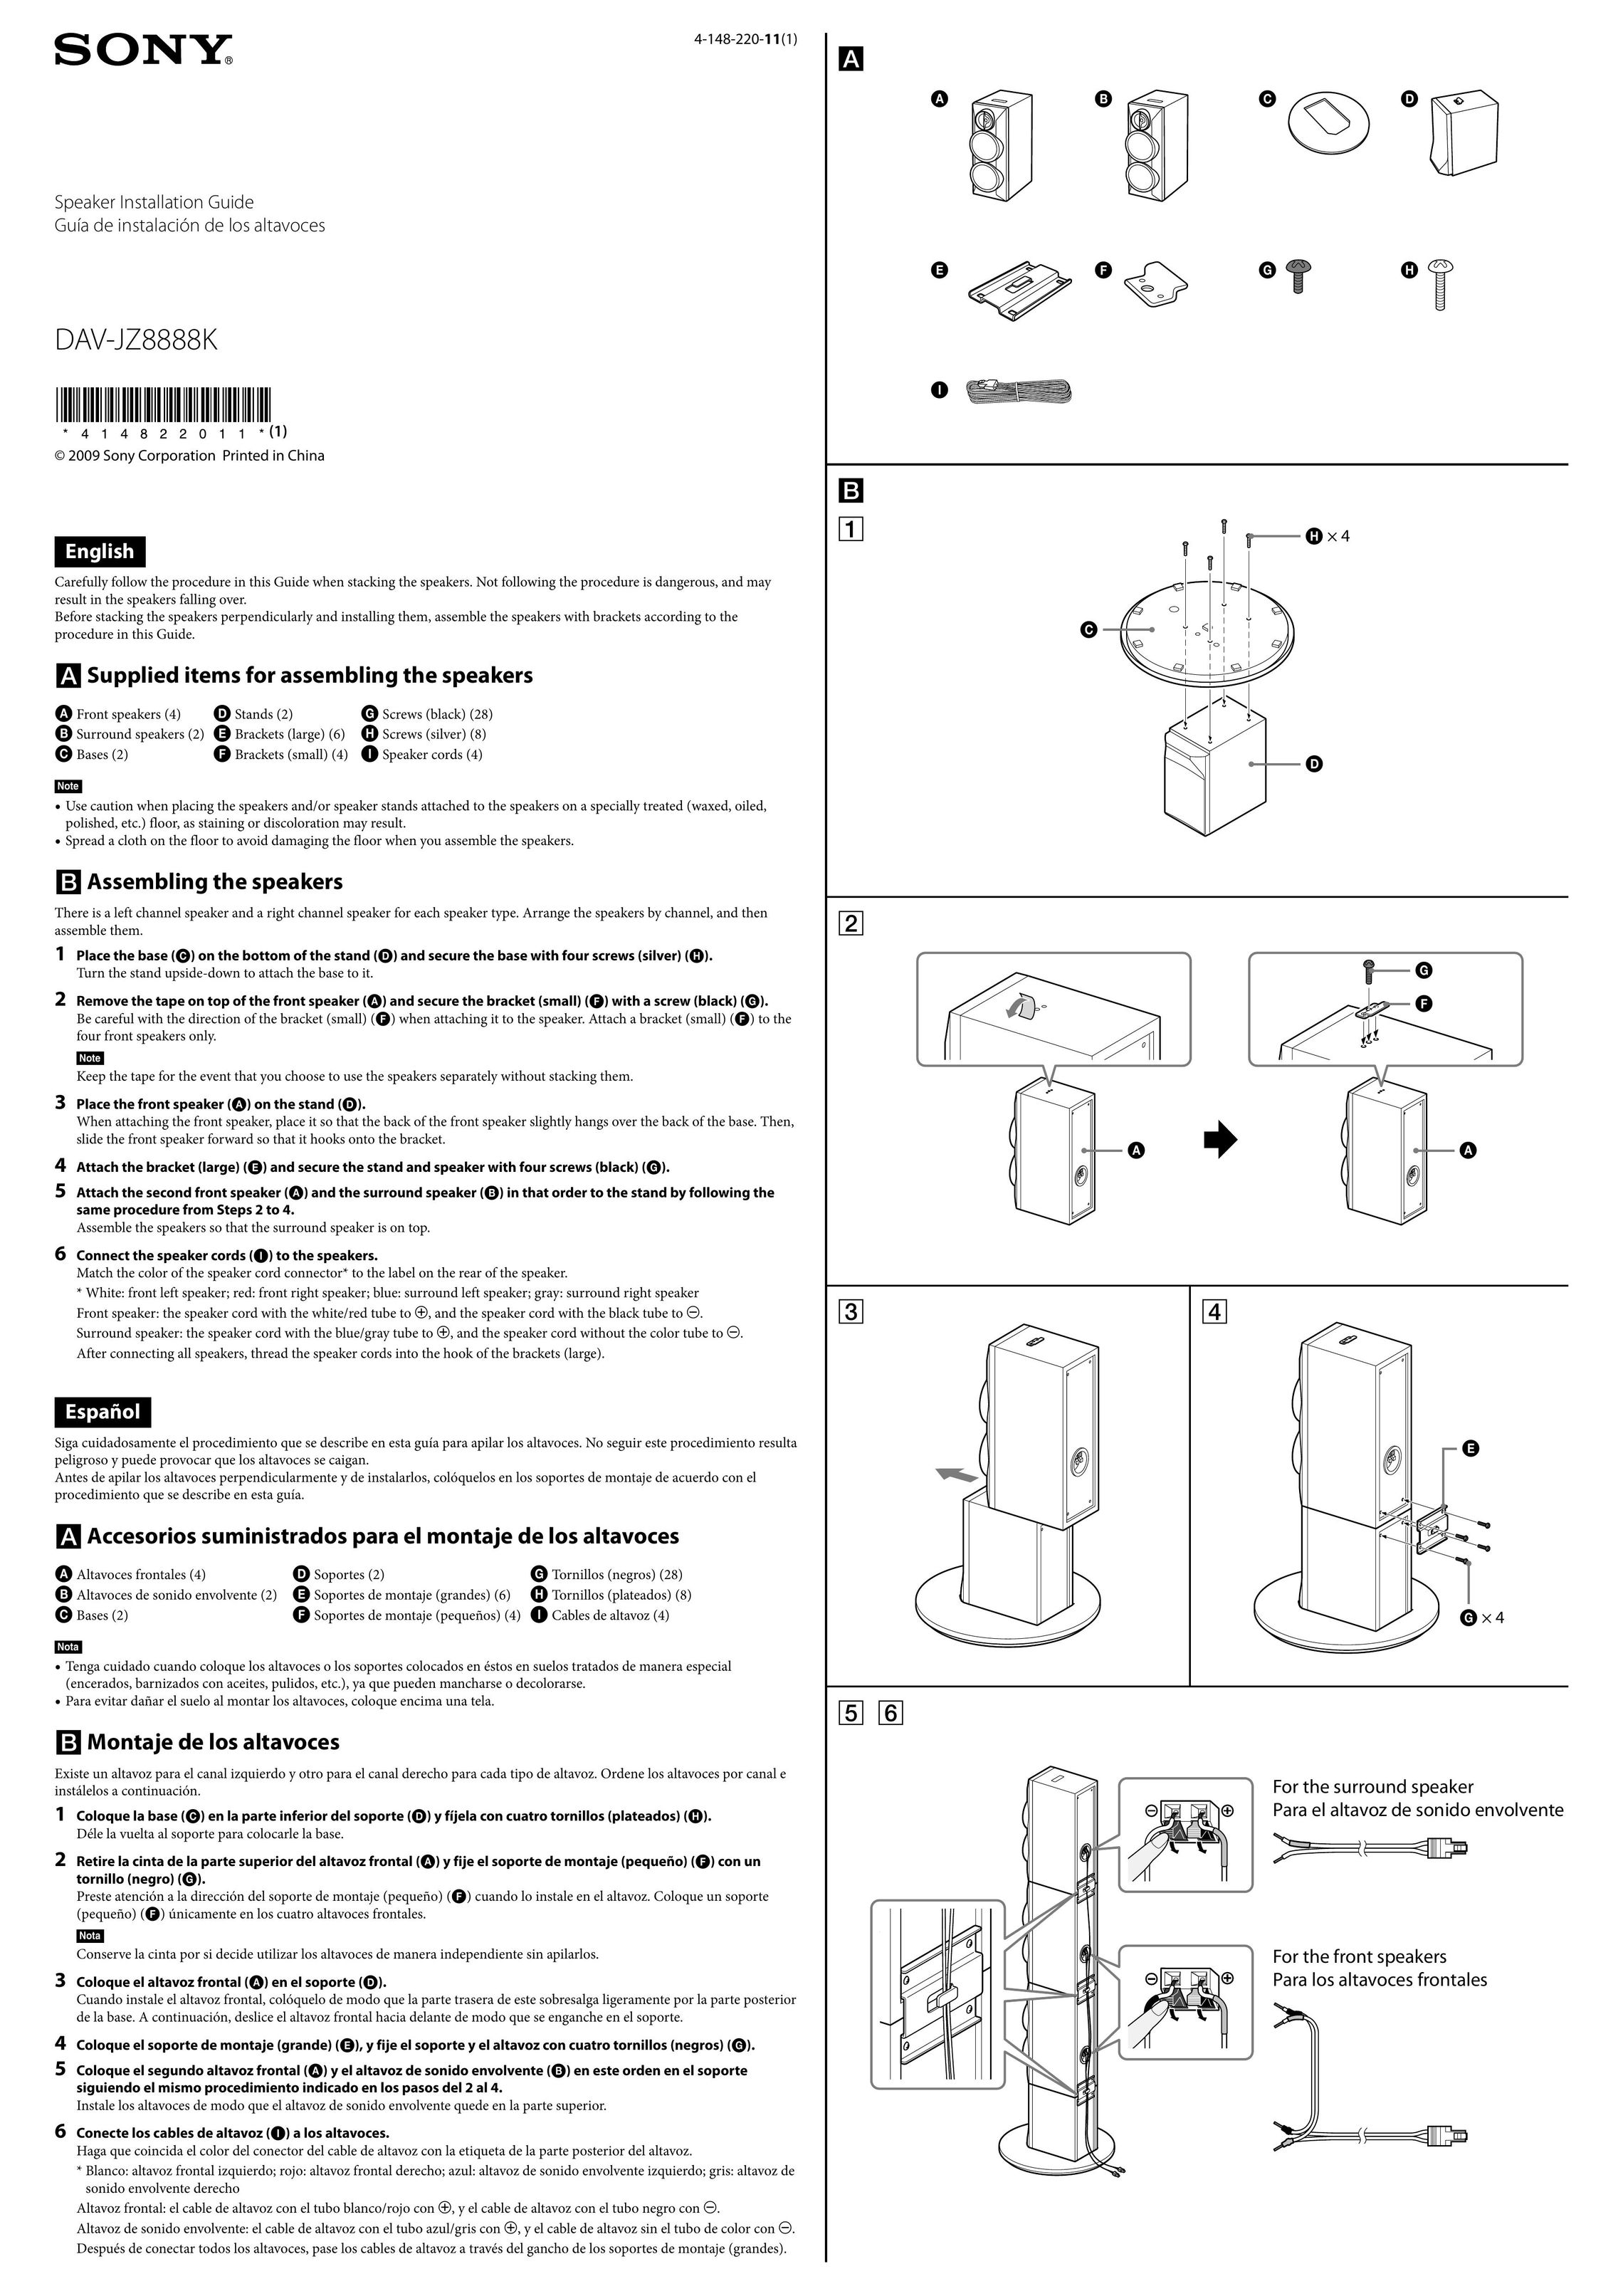 Sony DAV-JZ8888K Speaker User Manual